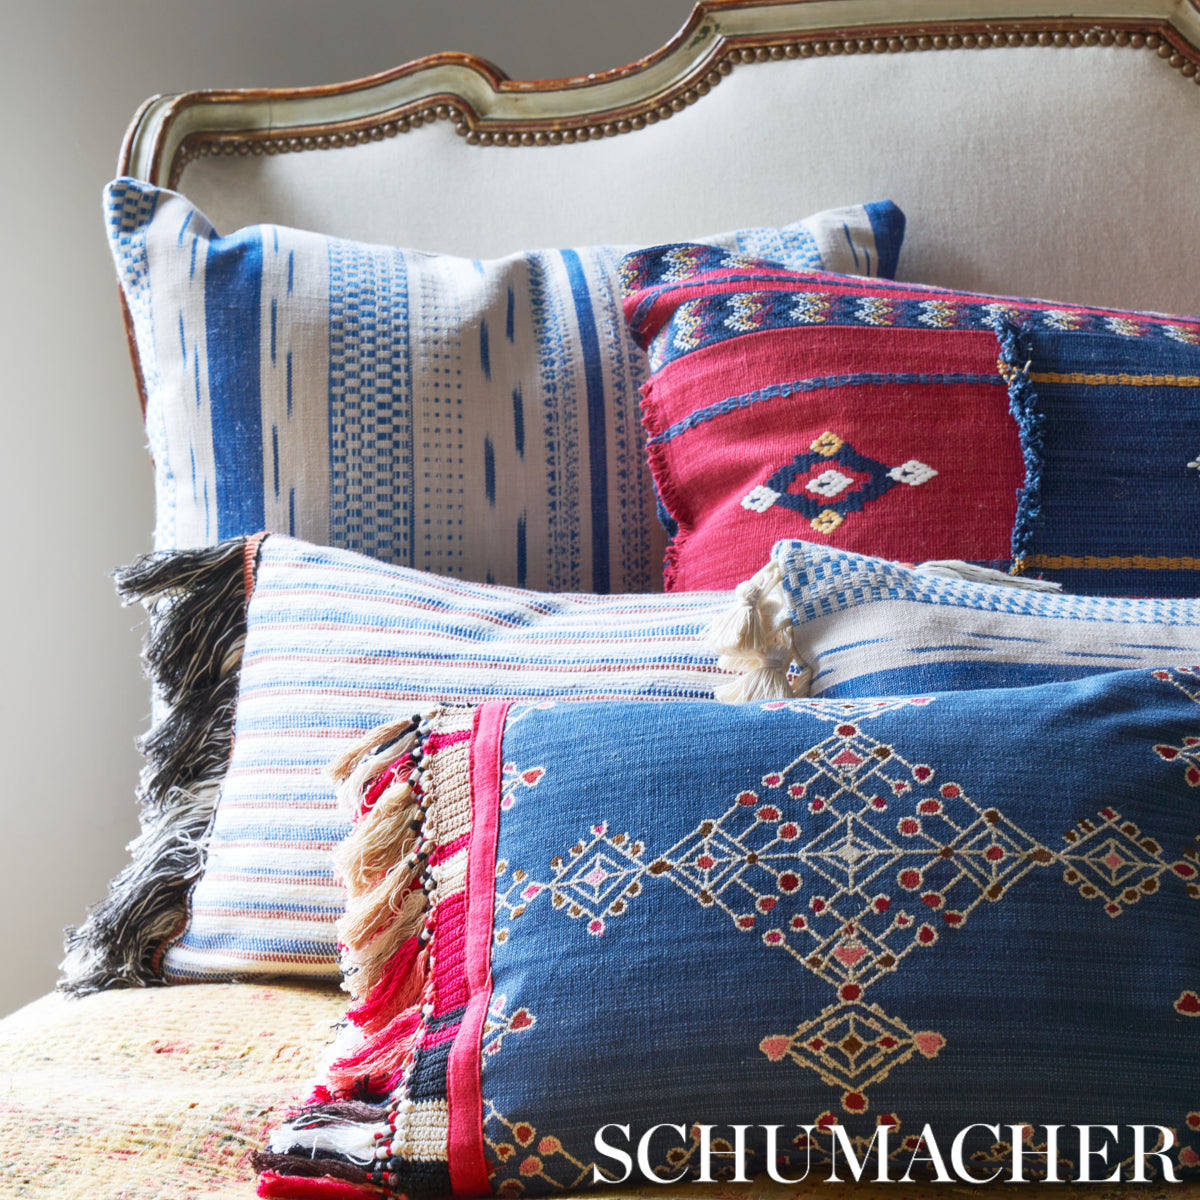 Schumacher Honey Bee Embroidery Natural Fabric - SCH 78420